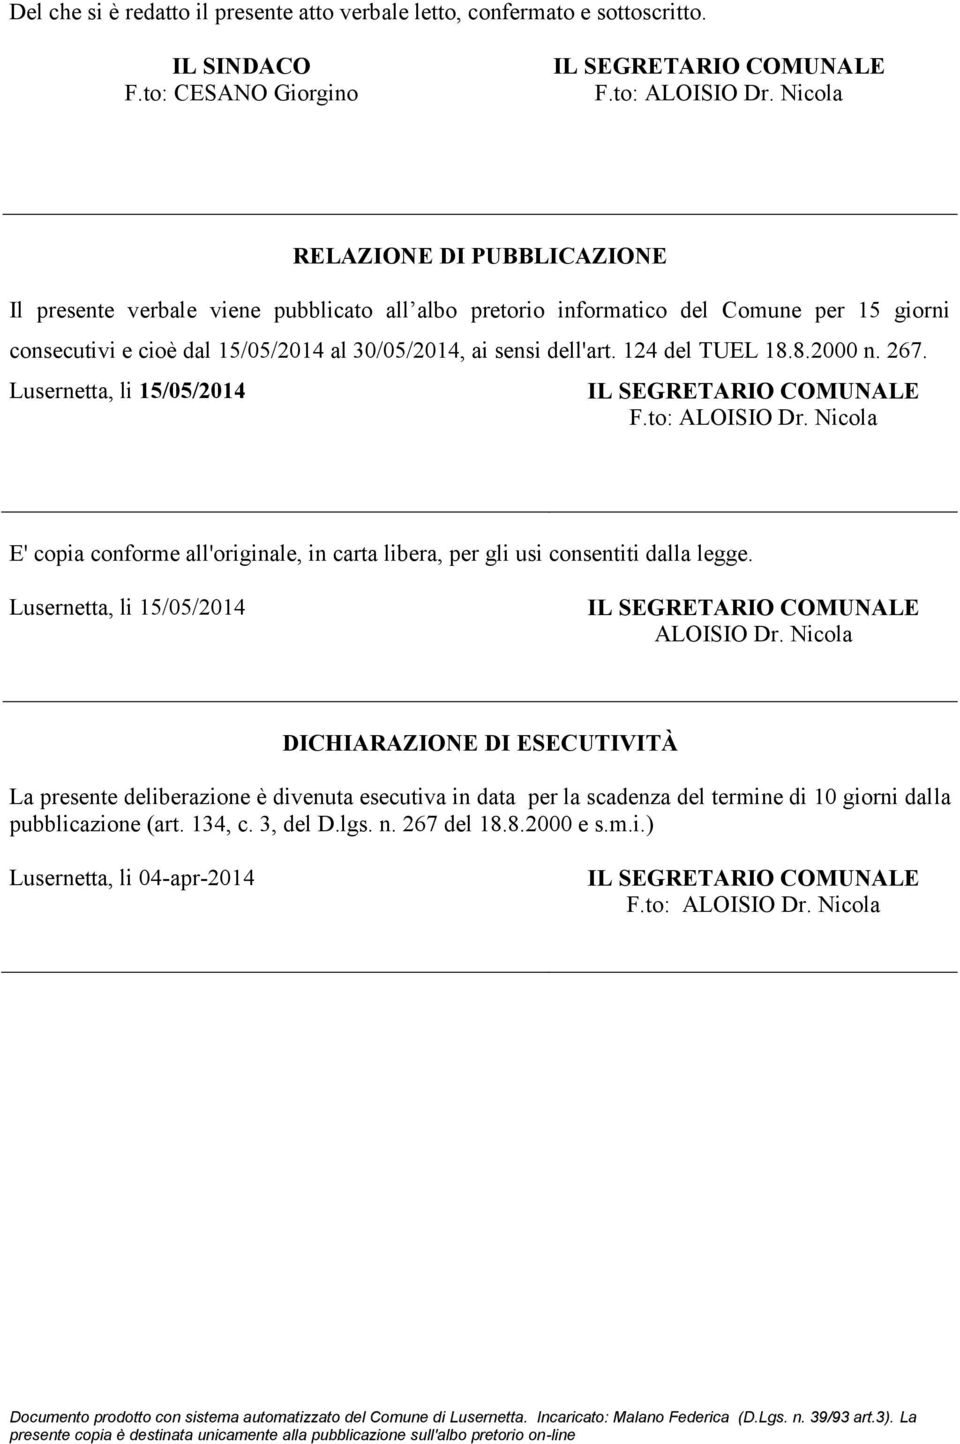 124 del TUEL 18.8.2000 n. 267. Lusernetta, li 15/05/2014 F.to: ALOISIO Dr. Nicola E' copia conforme all'originale, in carta libera, per gli usi consentiti dalla legge.